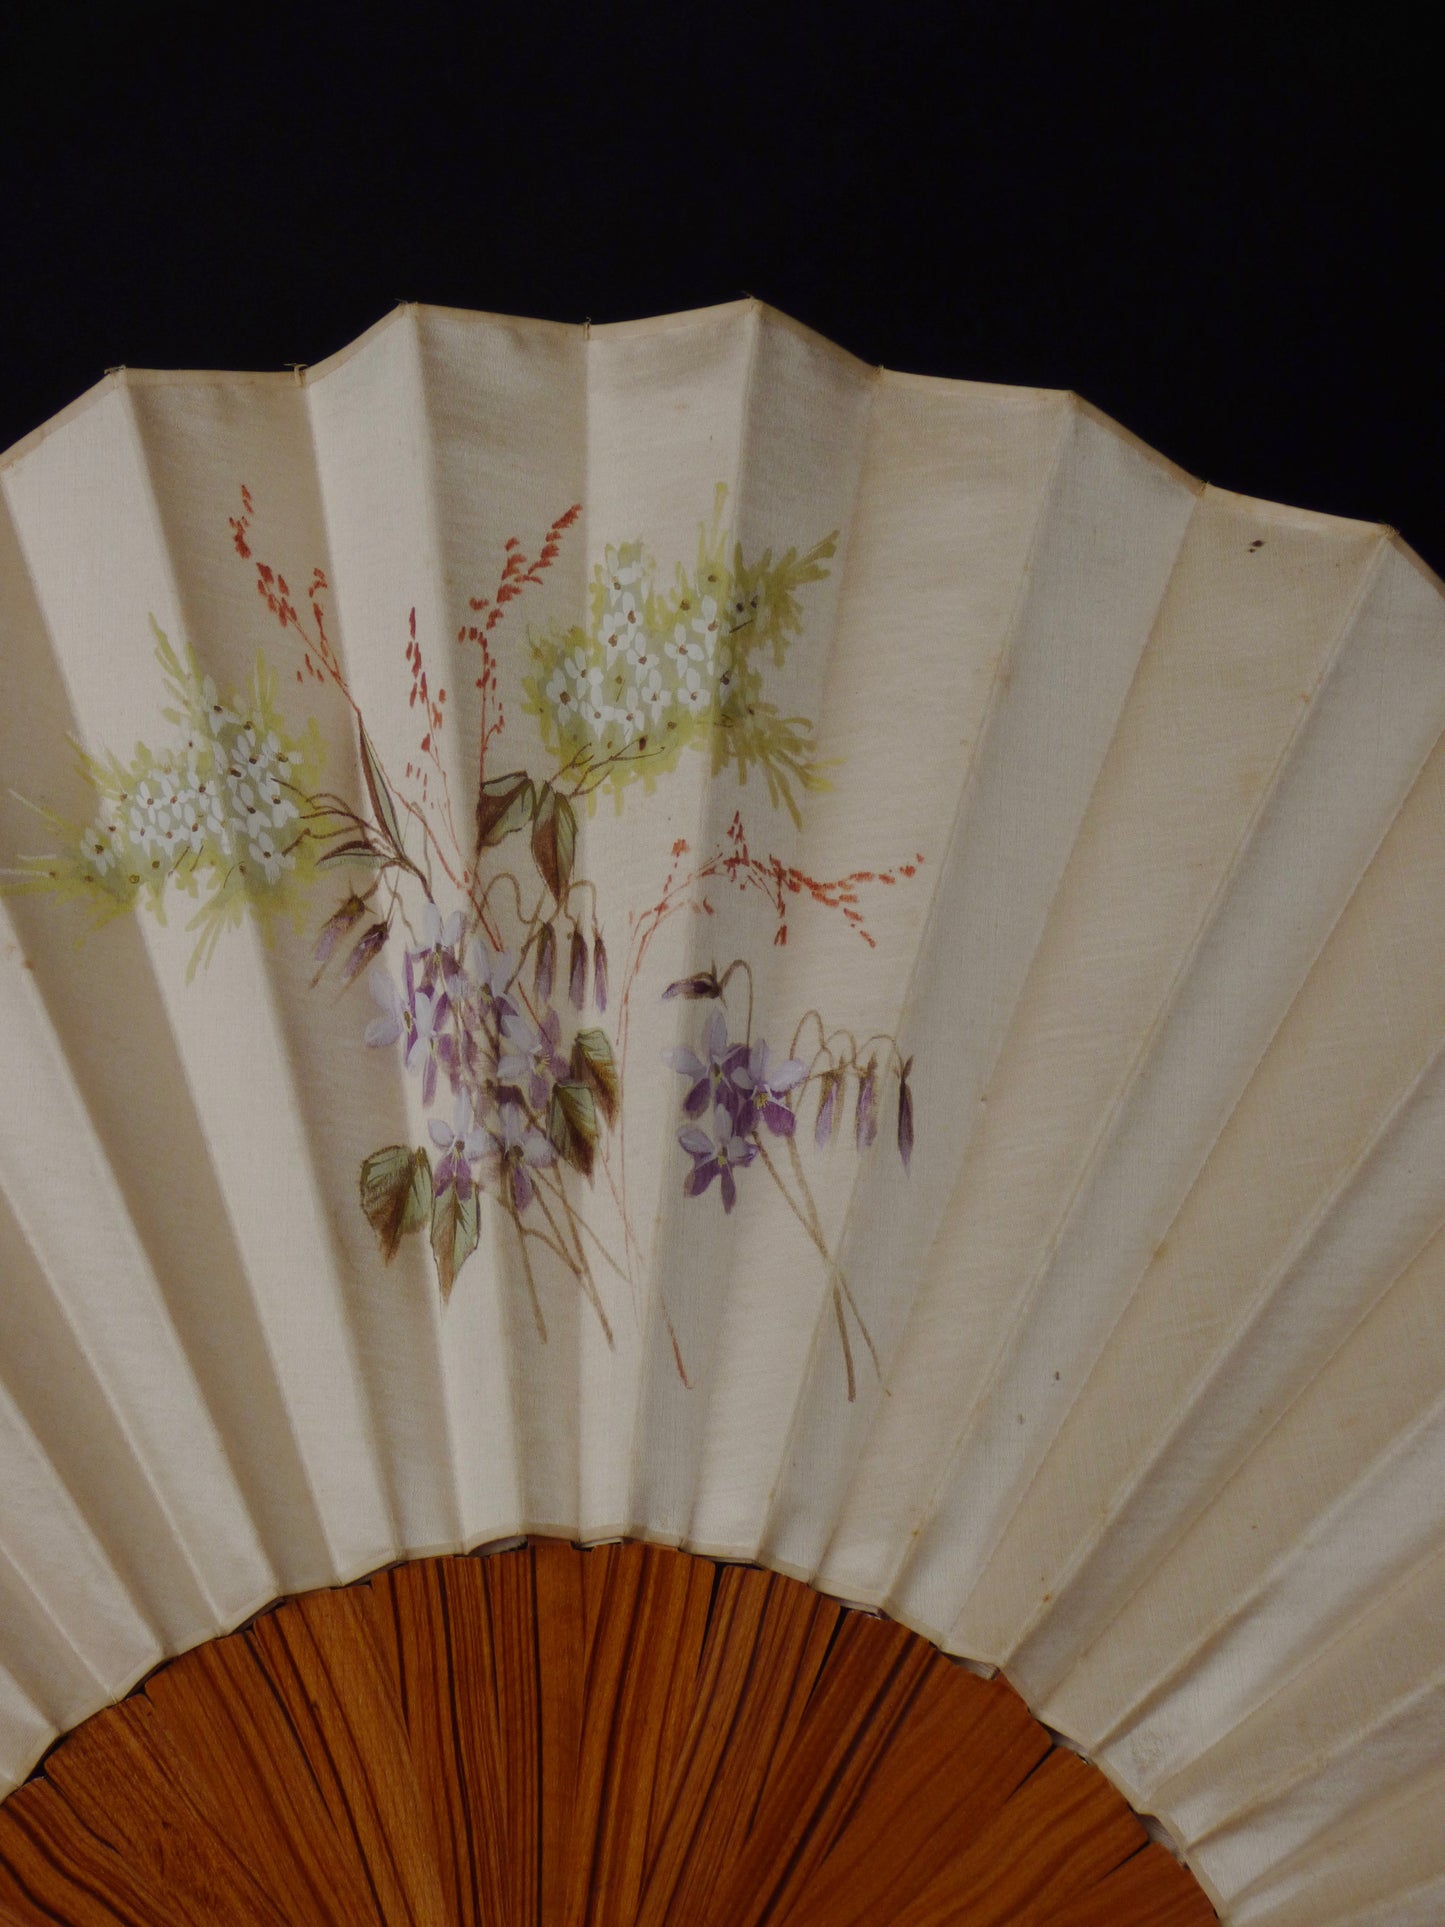 1890s Hand Painted Silk & Wood Fan